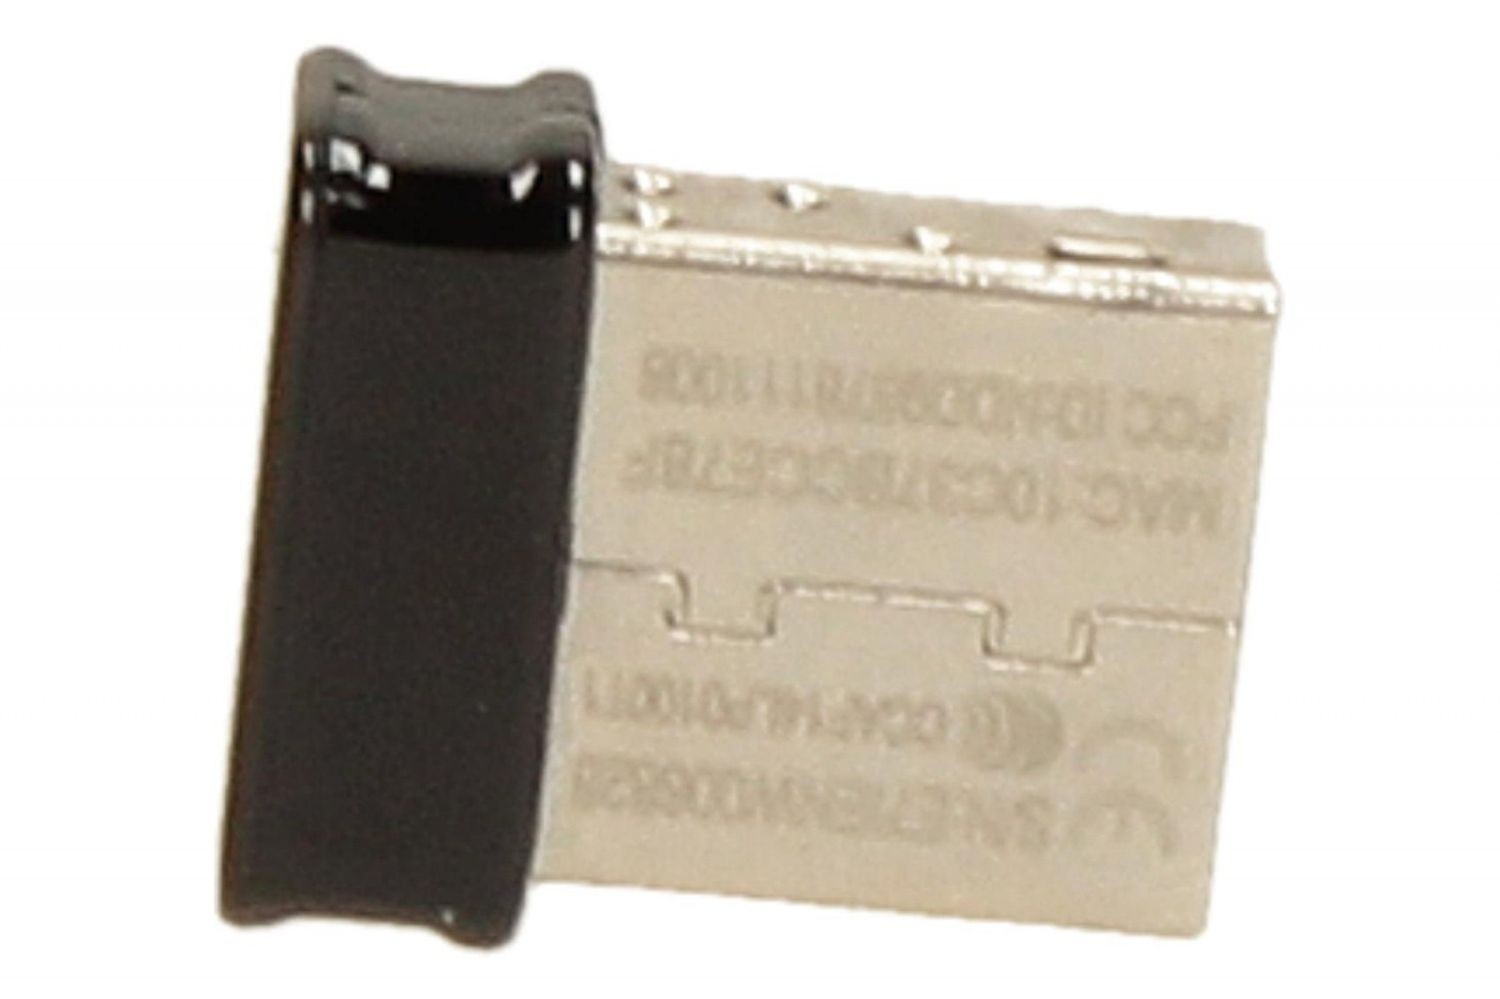 Asus USB-N10 Nano Karta sieciowa USB Wireless N150